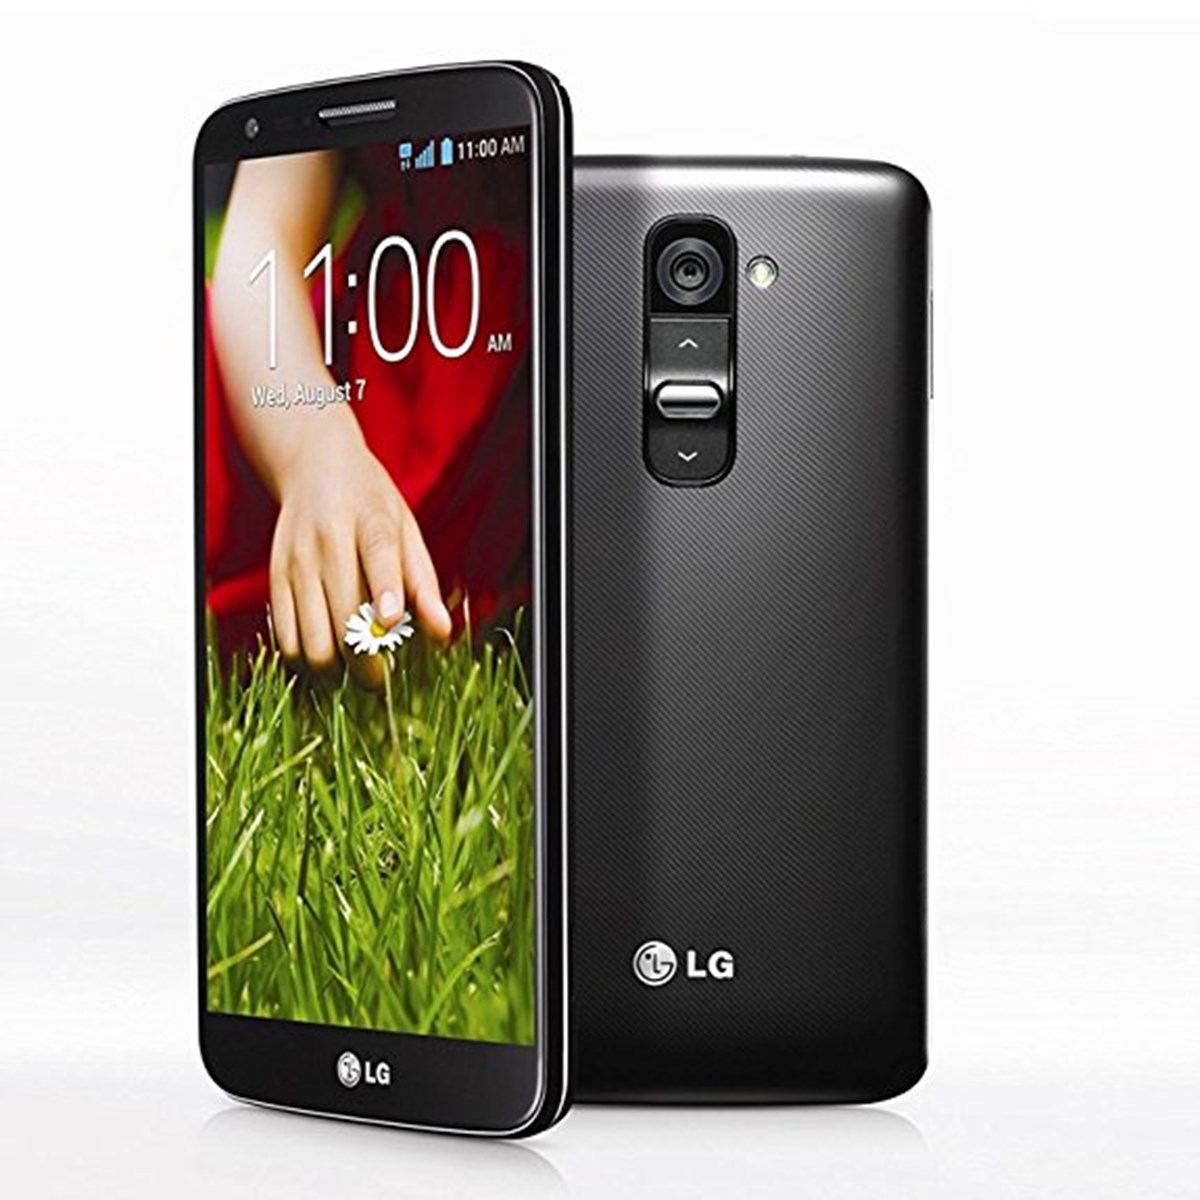 Mobilbrugere, der ikke vil have det nyeste skrig, kan sagtens få stor glæde af LG G2, selvom den er tilbage fra 2013